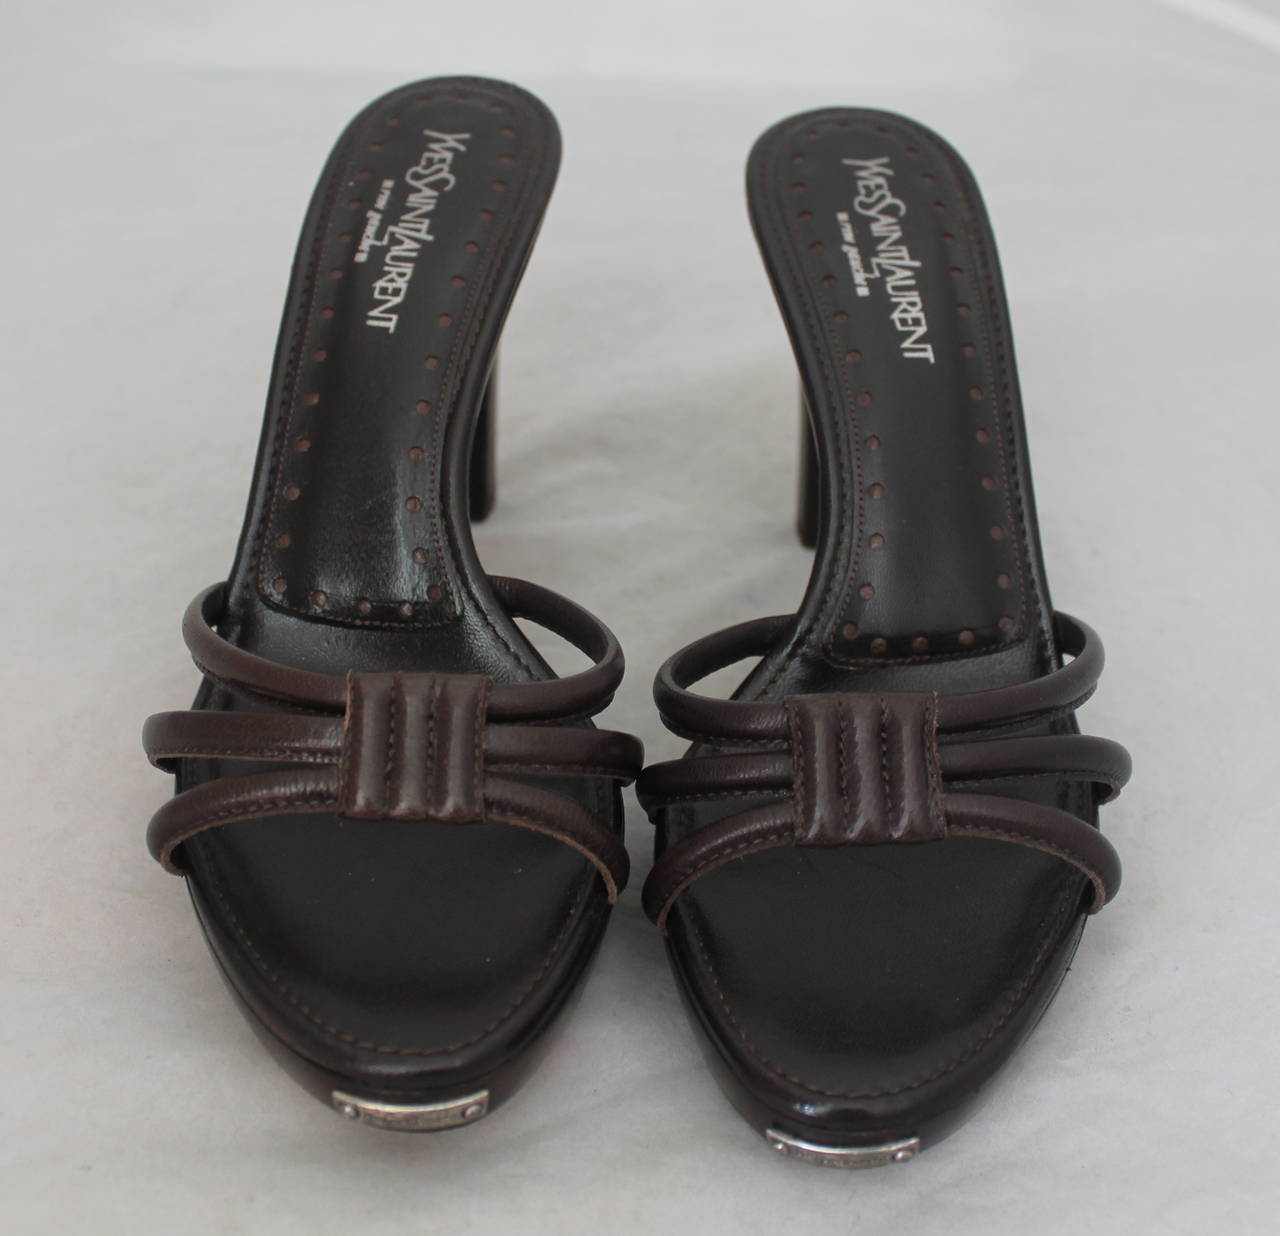 Yves Saint Laurent Schokolade Braun Slide On Leder Sandale Heels. Diese Größe 8 Schuhe sind in sehr gutem Zustand.